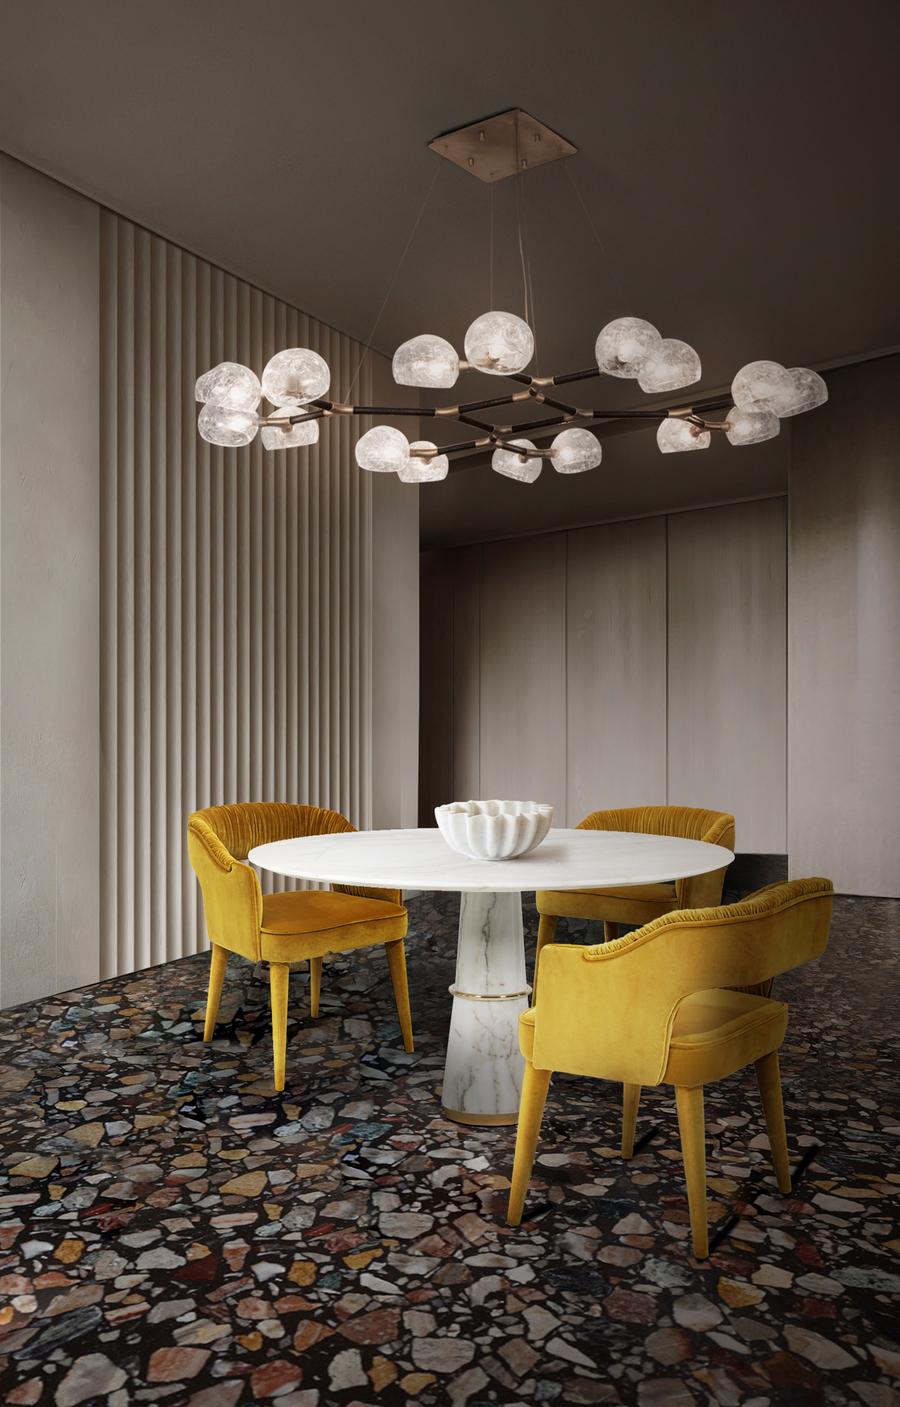 Superb Contemporary Decor To Uplift Your Dining Room Makeover, modern decor, interior decor, contemporary decor, contemporary design home inspiration ideas